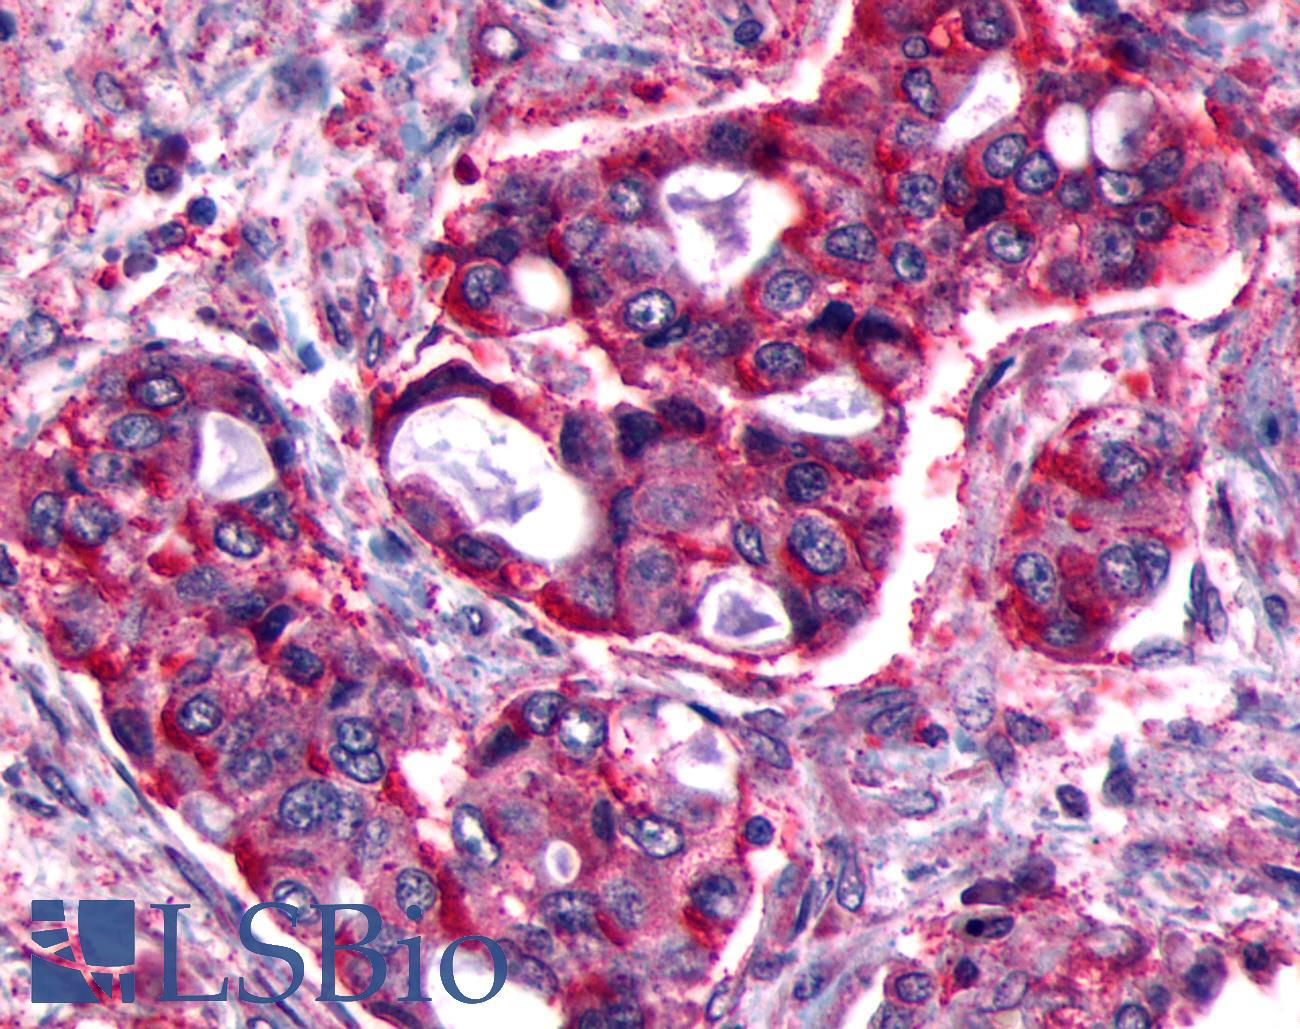 FP / PTGFR Antibody - Lung, Non Small-Cell Carcinoma